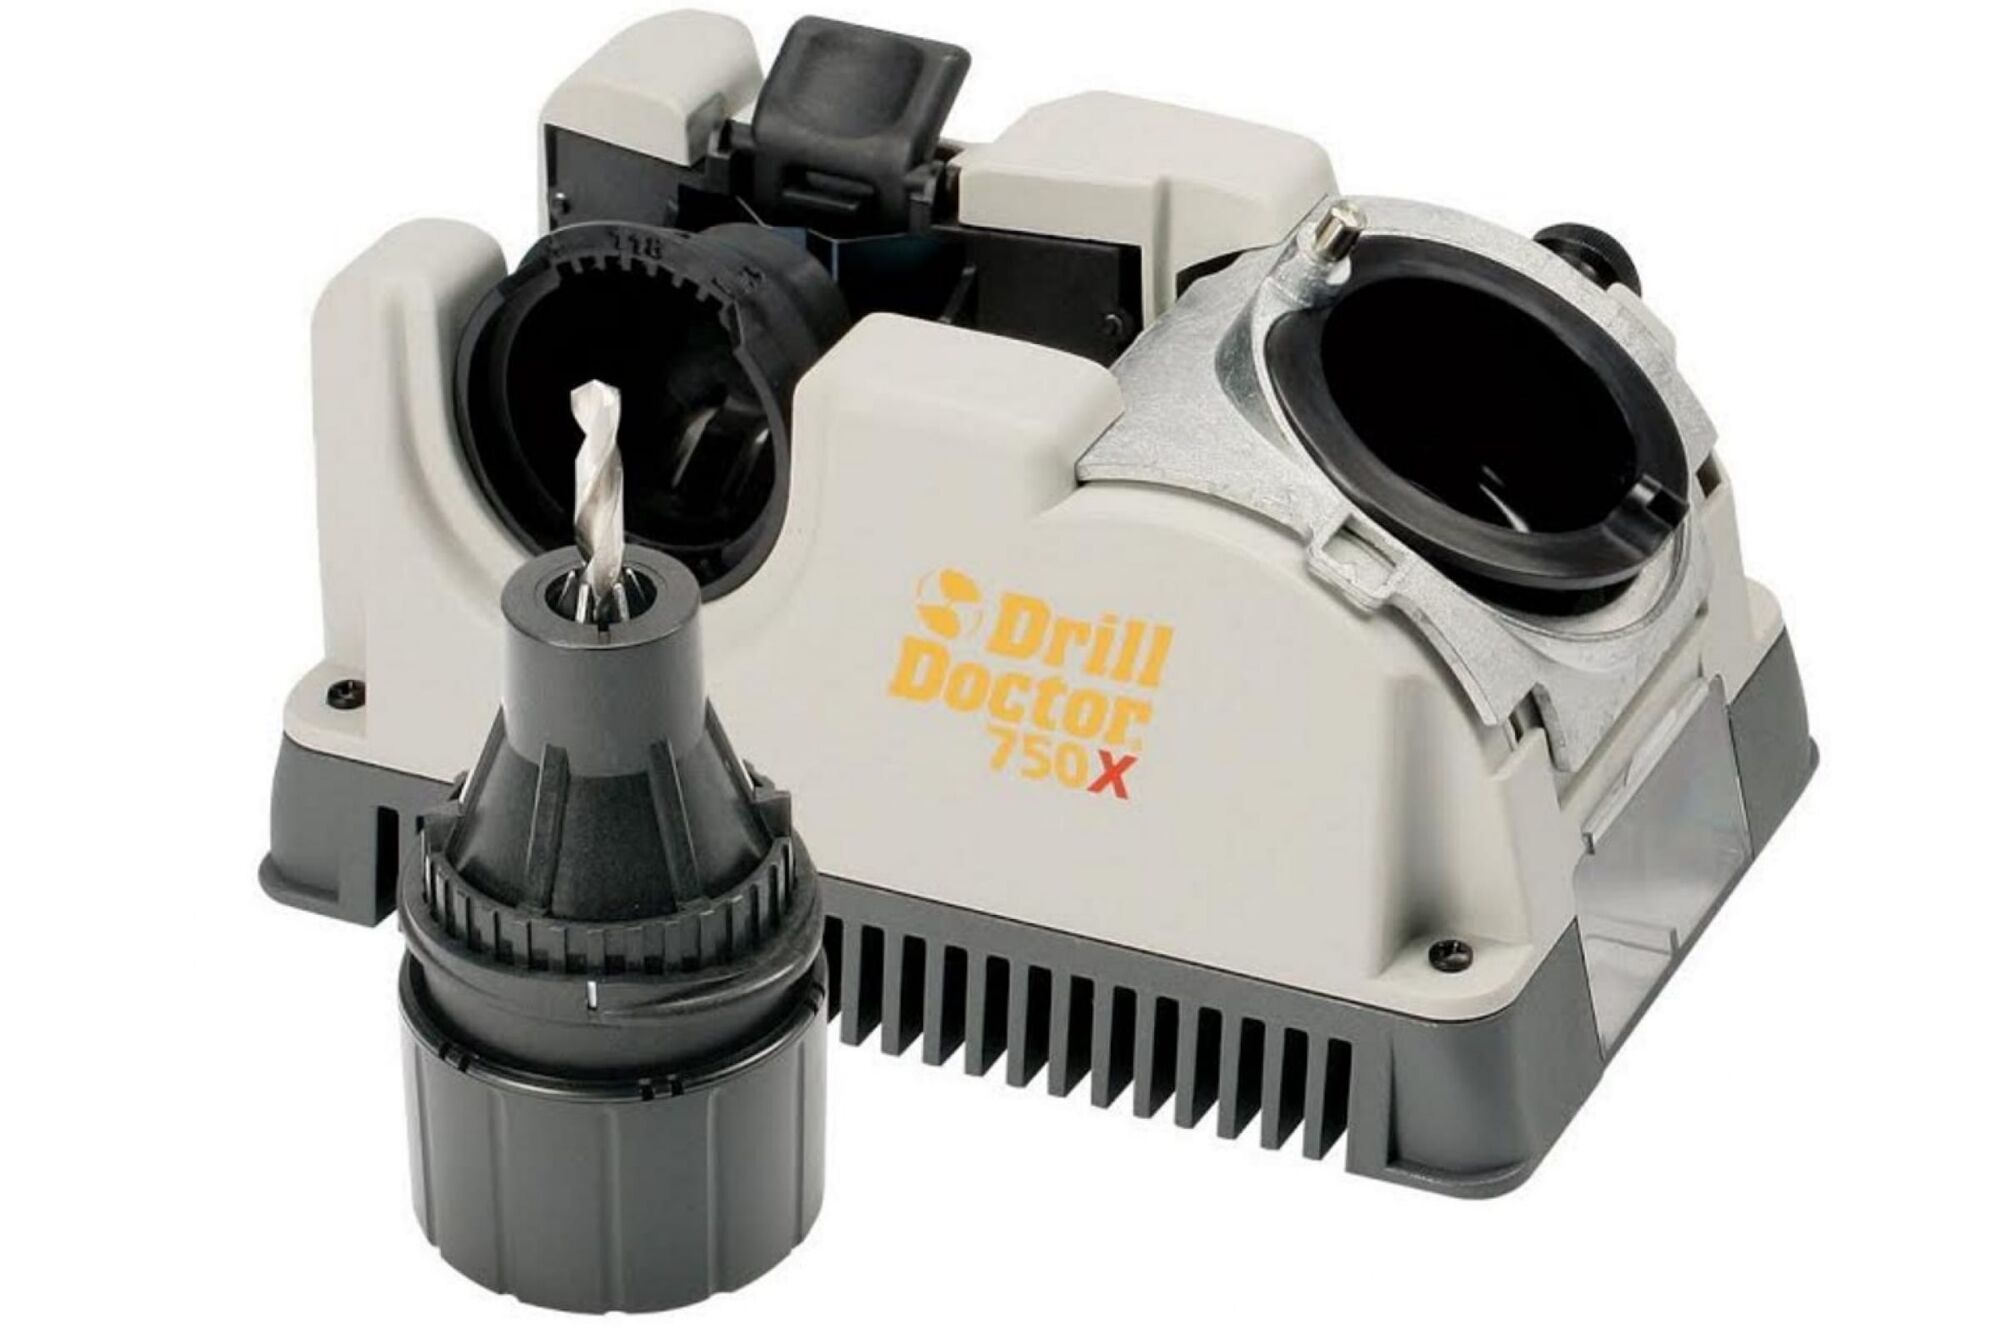 Заточной станок для сверл Darex Drill Doctor750 X, D2.5-19мм в боксе DD750 X I 230 В, box М00008189 #1